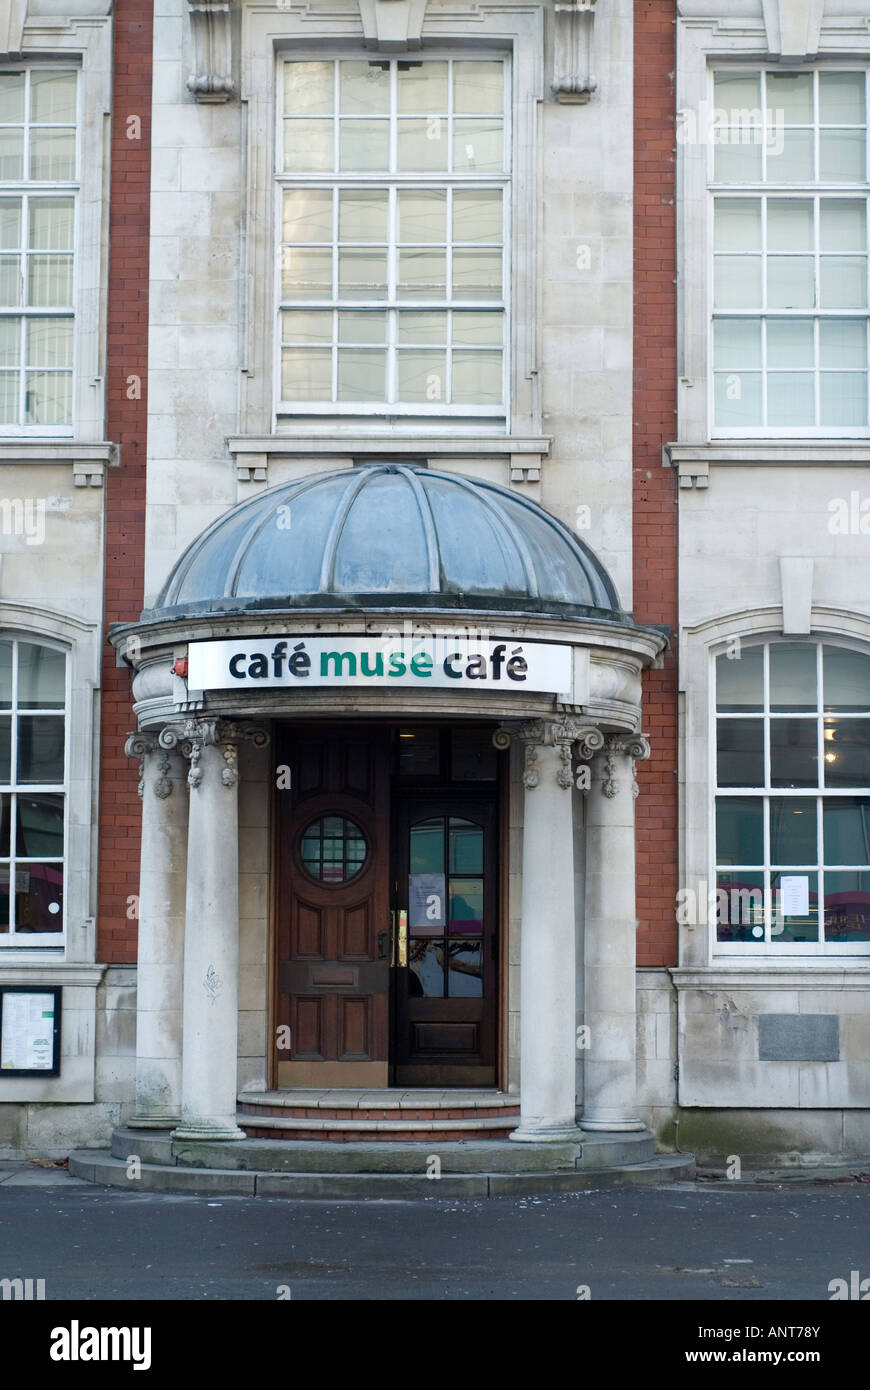 Cafe muse dans le Manchester museum Université de Manchester sur Oxford Road UK Banque D'Images